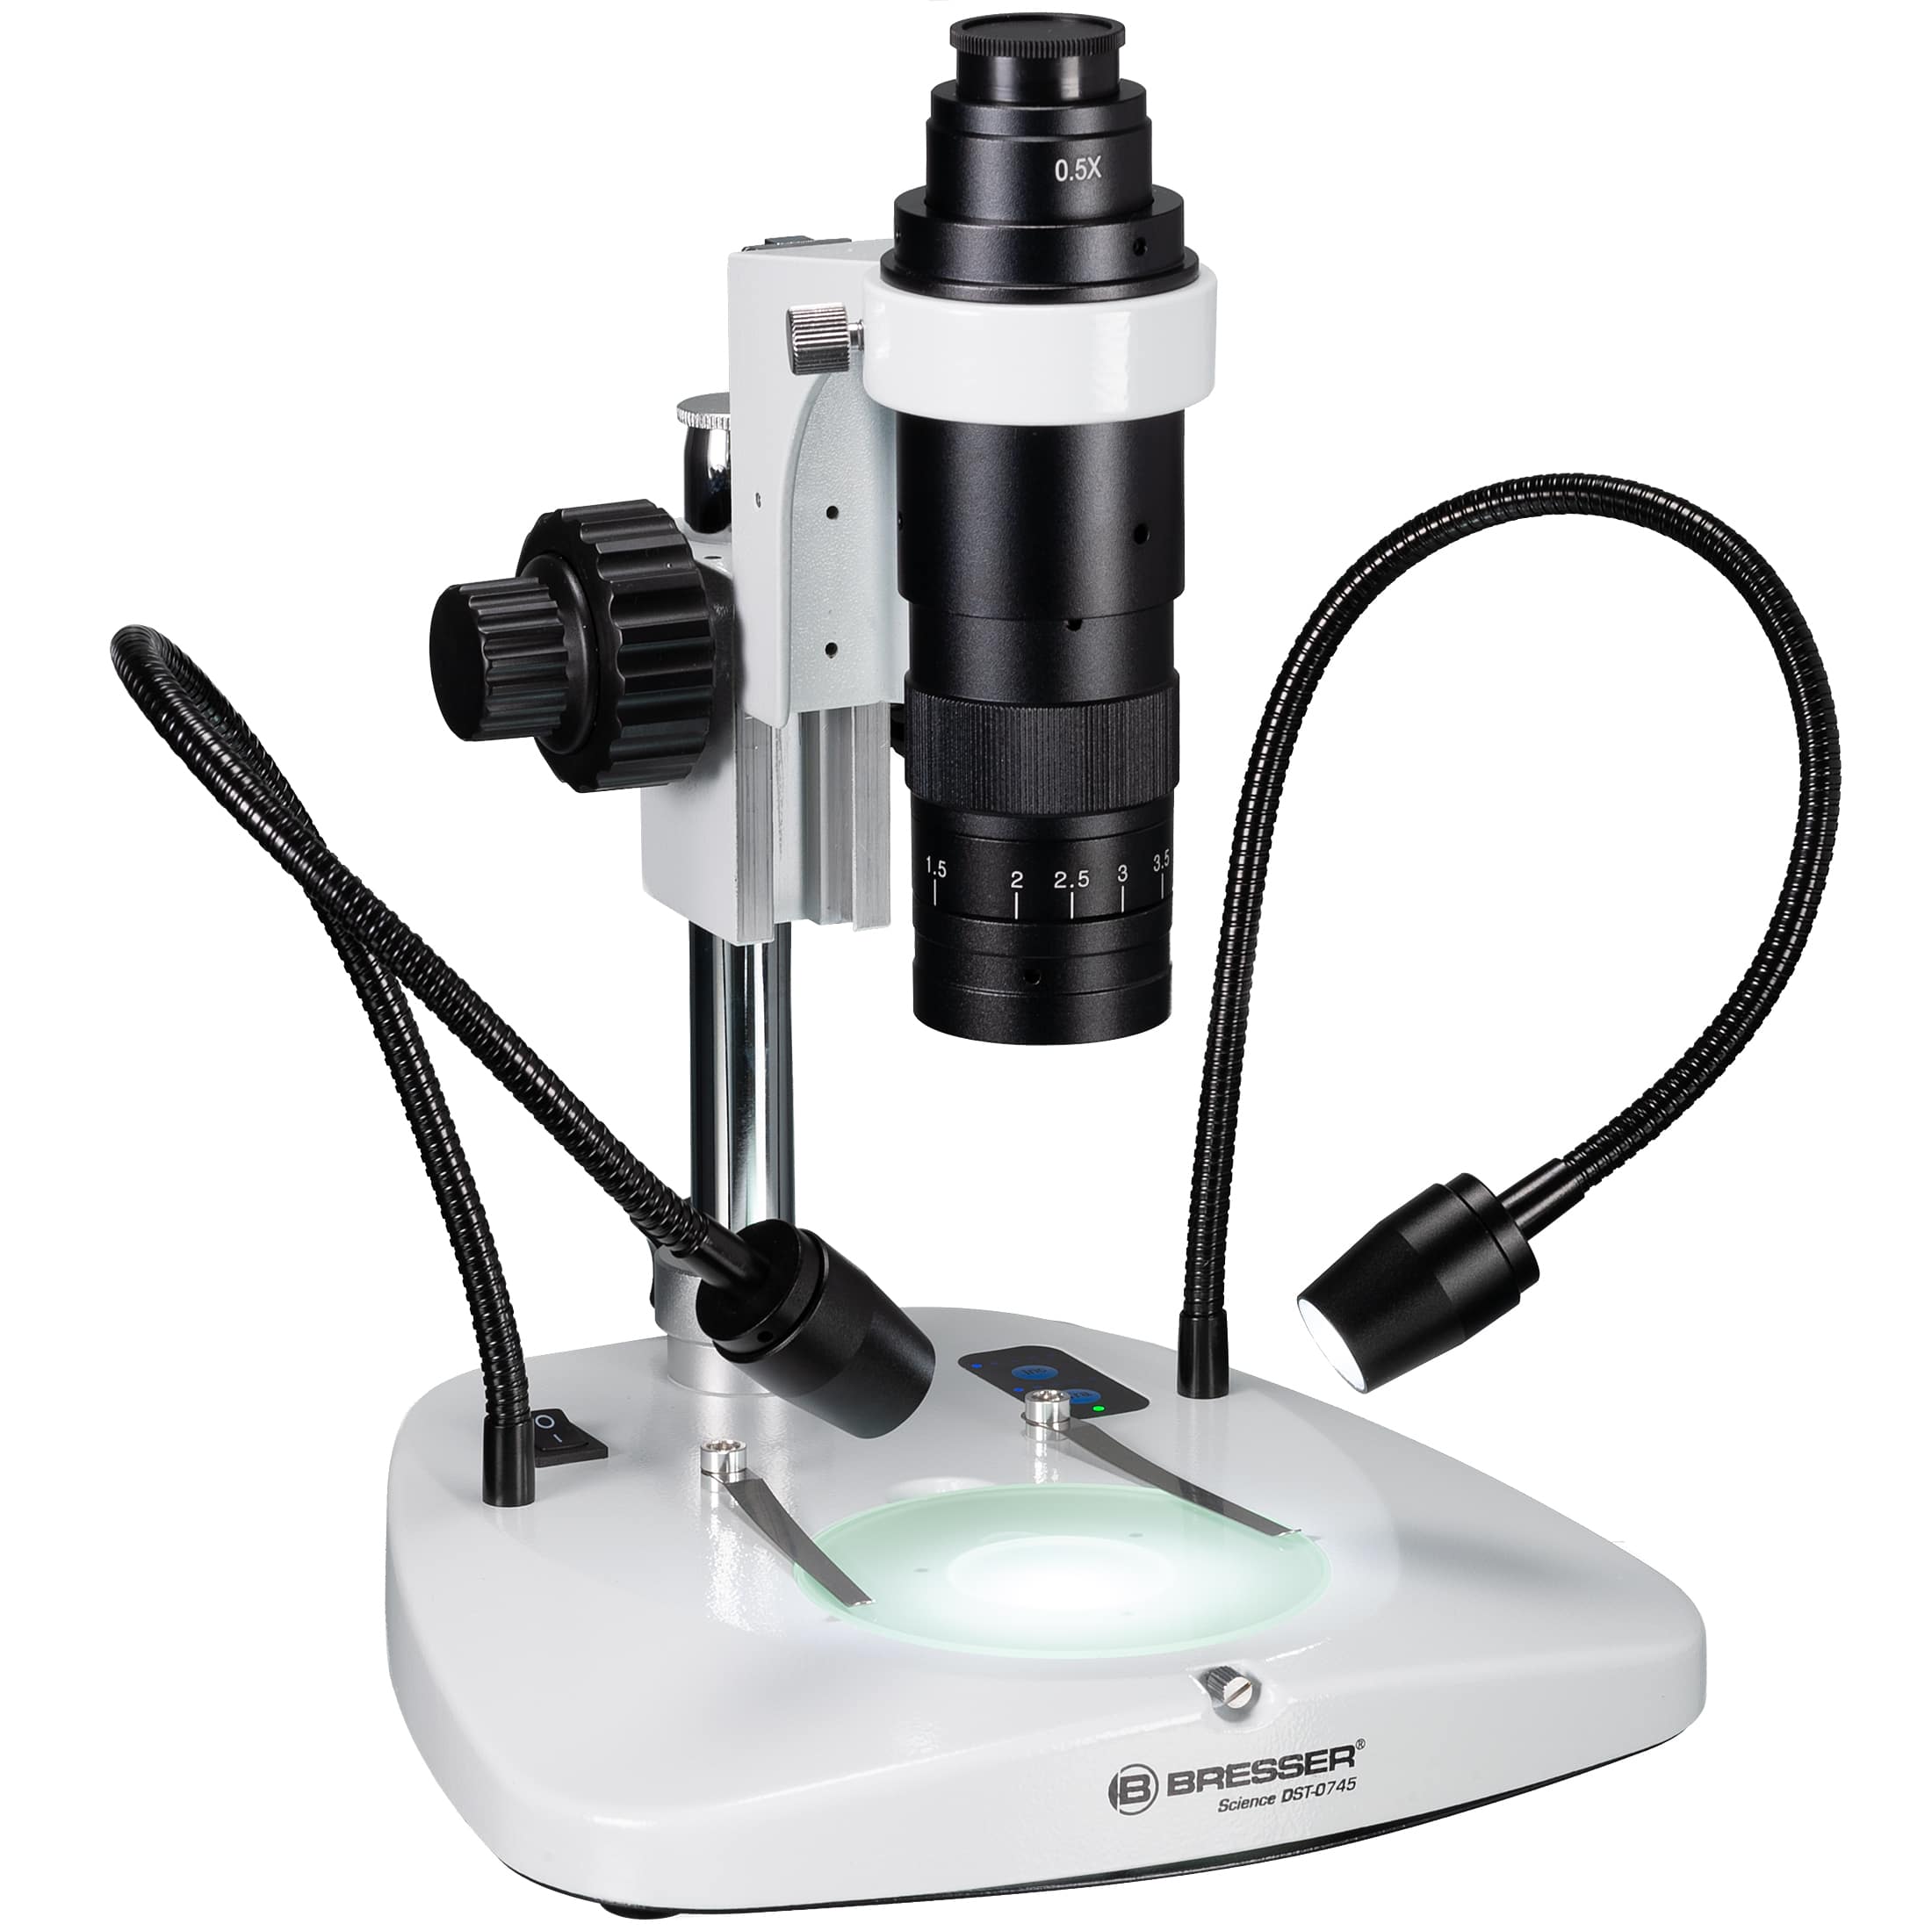   Ottica zoom per fotografare il microscopio e ultra-macro digitali  